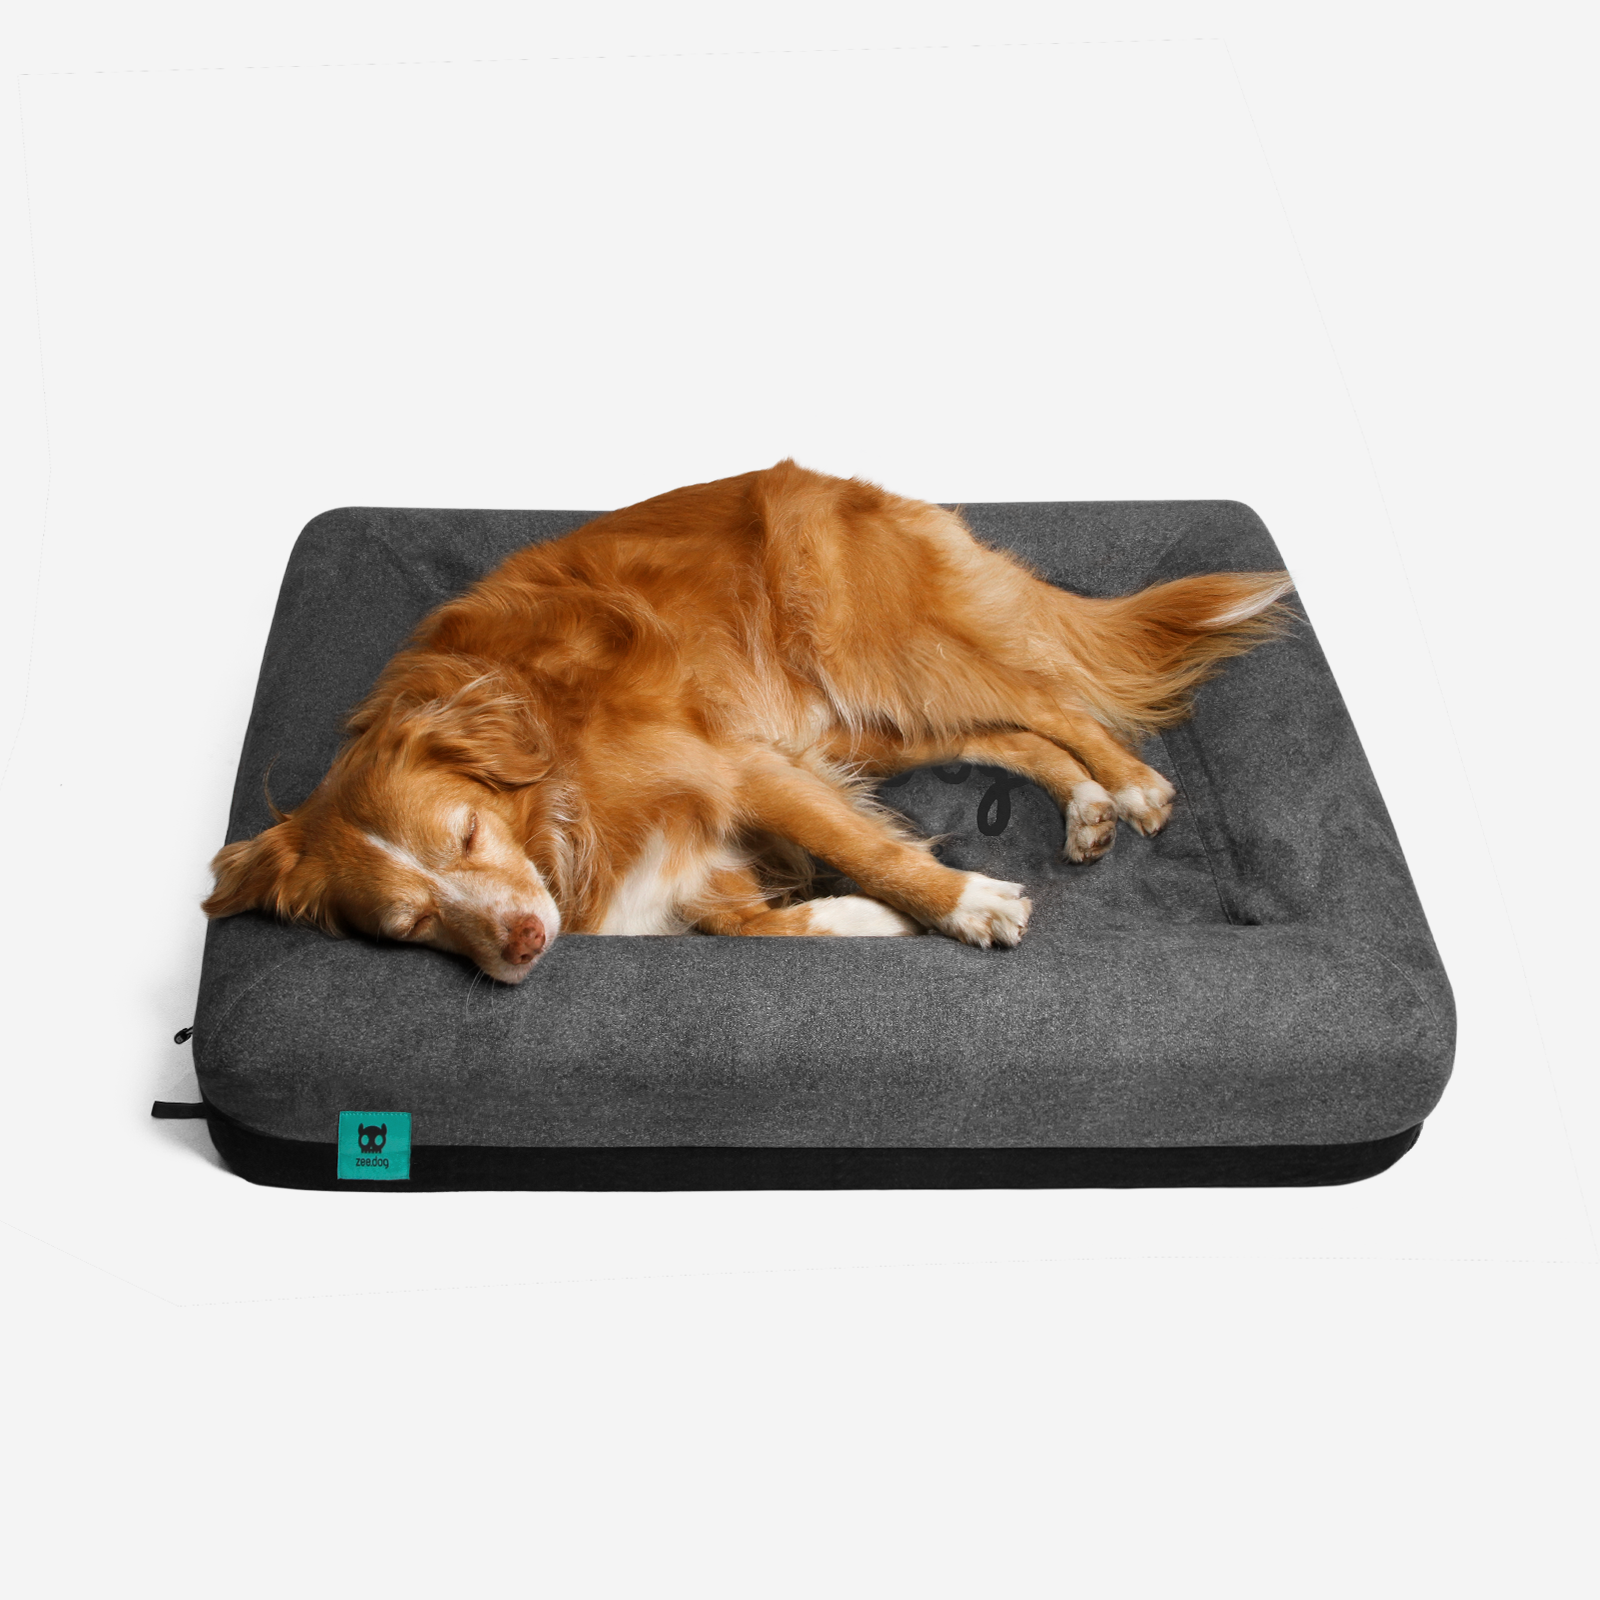 Zee.Bed Logo | Dog Bed